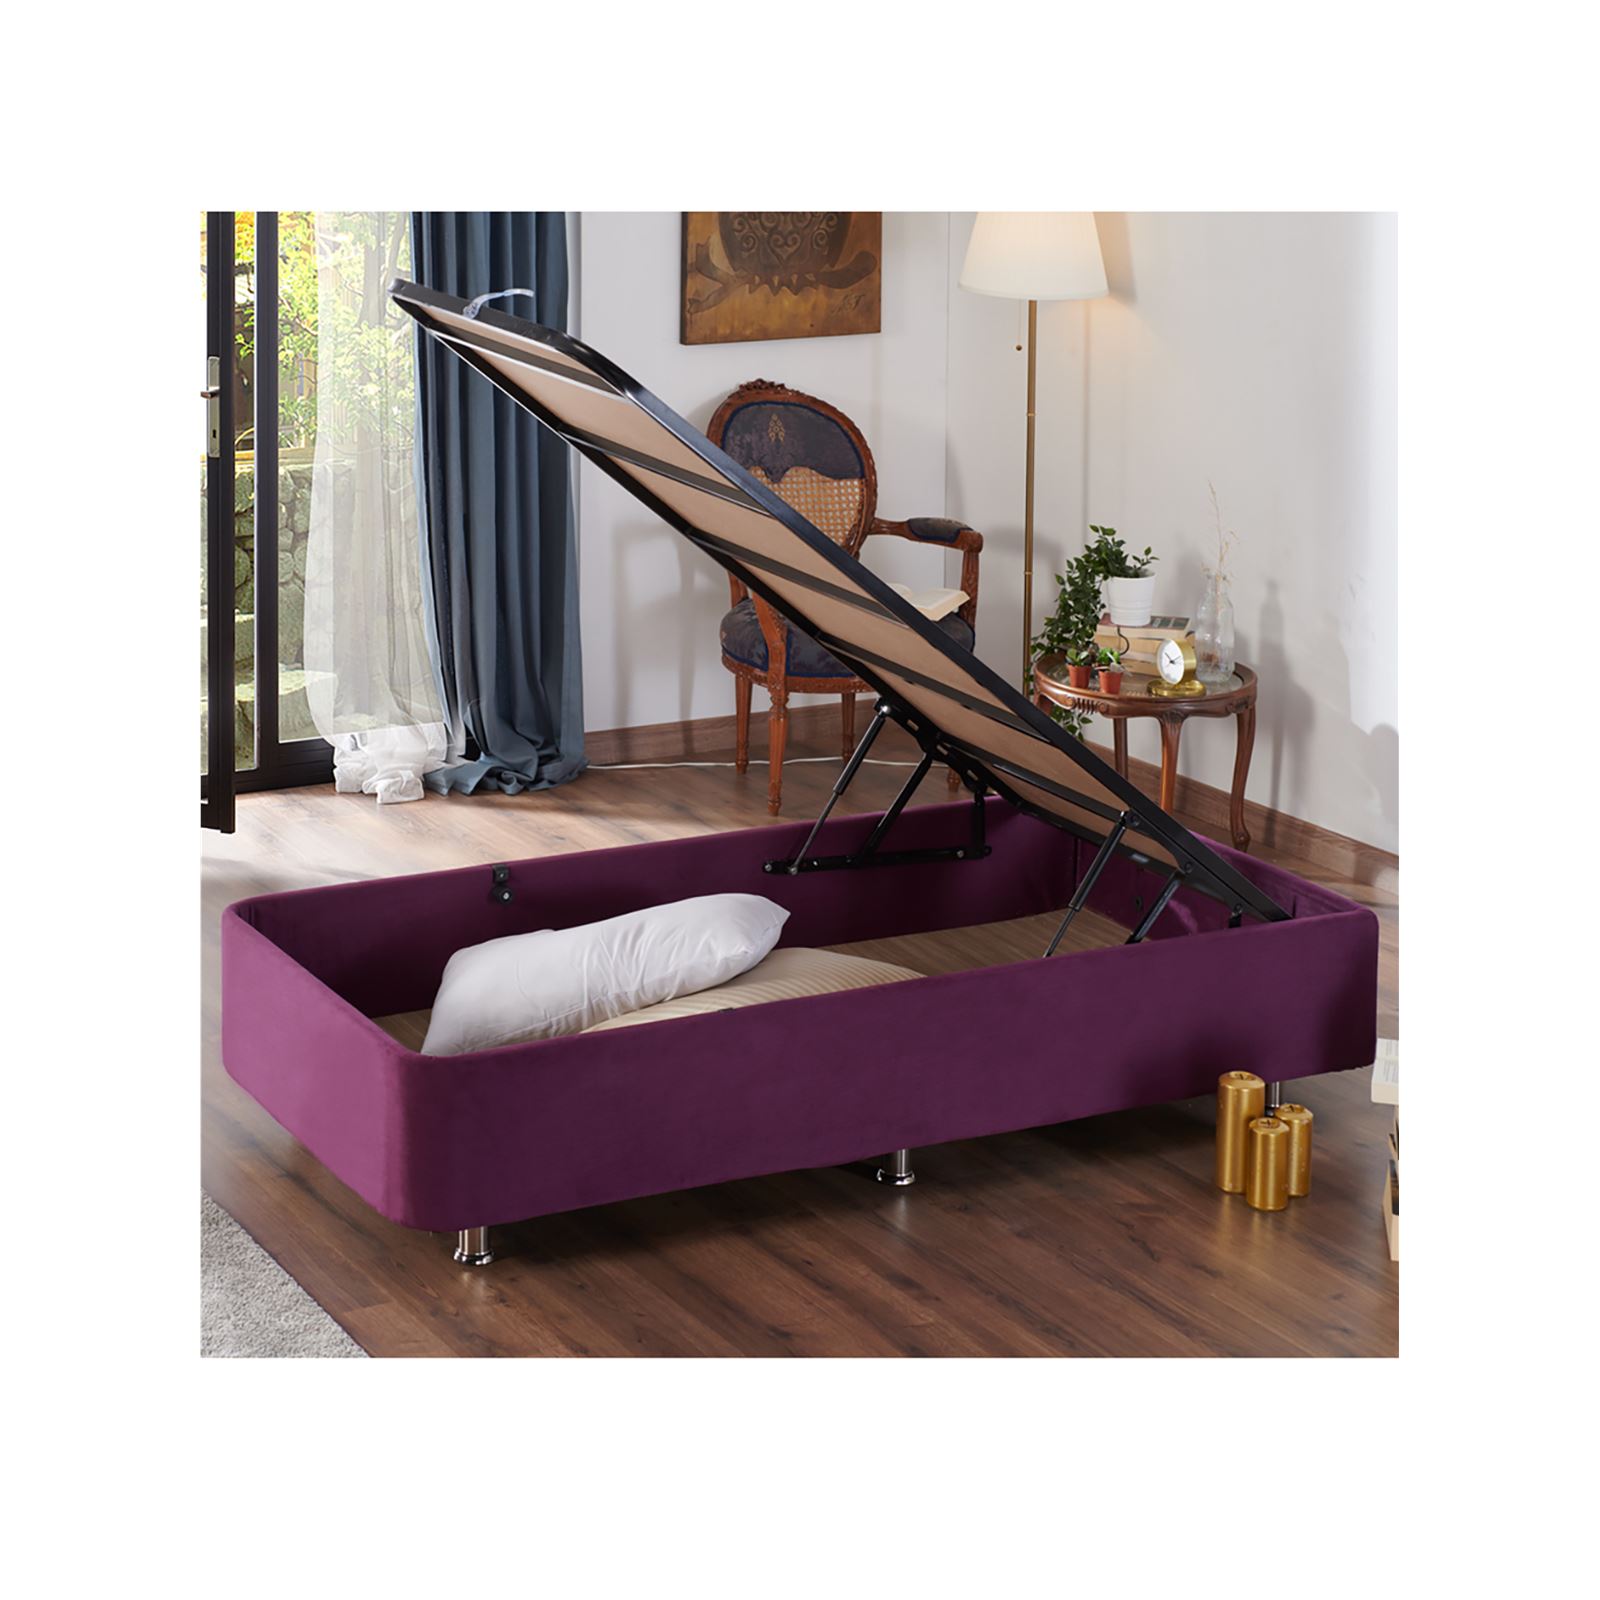 Niron Purple Yatak Seti 100x200 cm Tek Kişilik Yatak Baza Başlık Takımı Orta Sert Yatak Baza ve Başlığı Mor